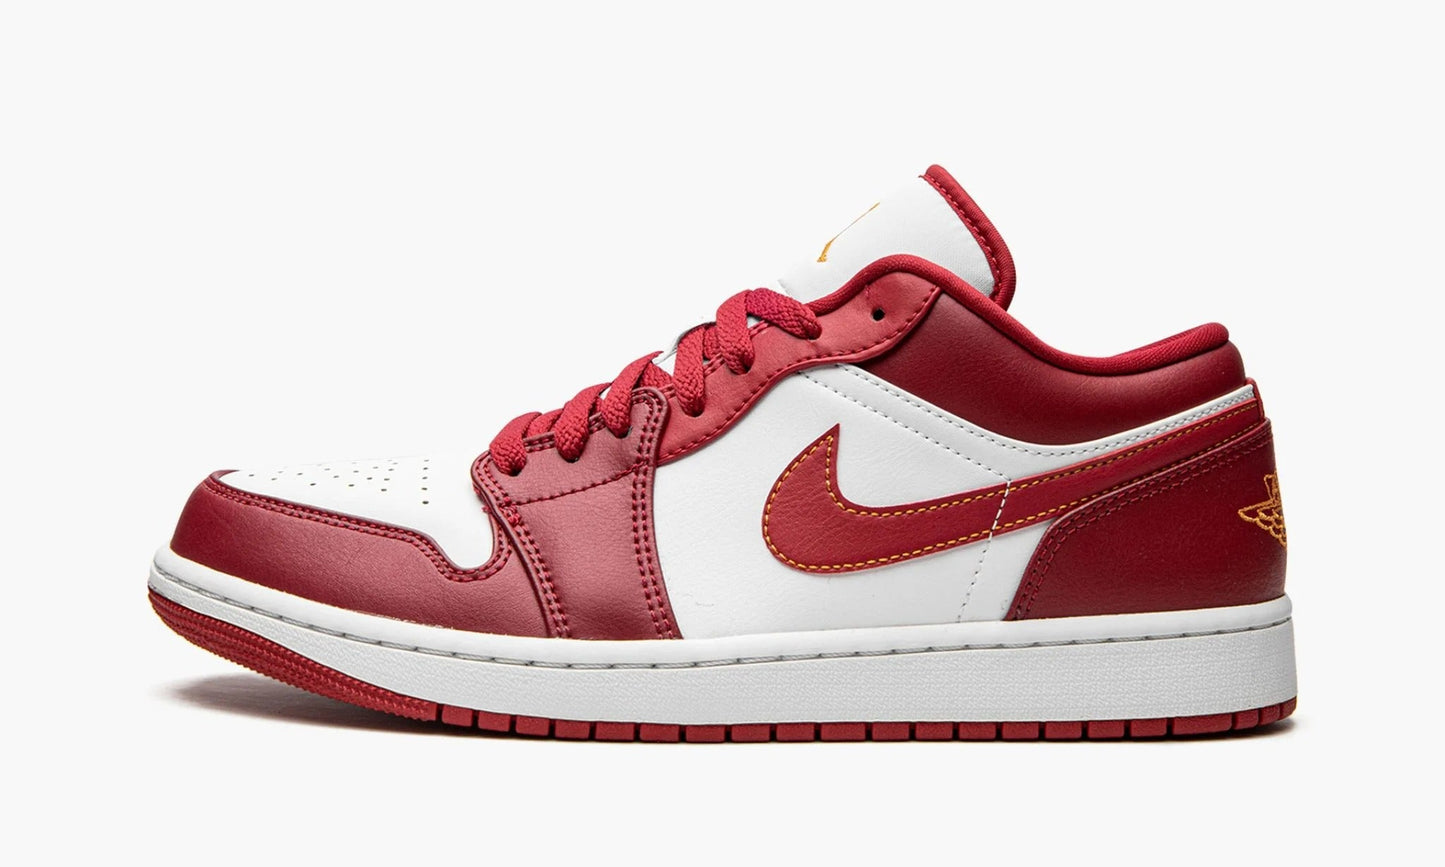 Nike AIr Jordan 1 Low "Cardinal Red" - 553558-607 | Grailshop